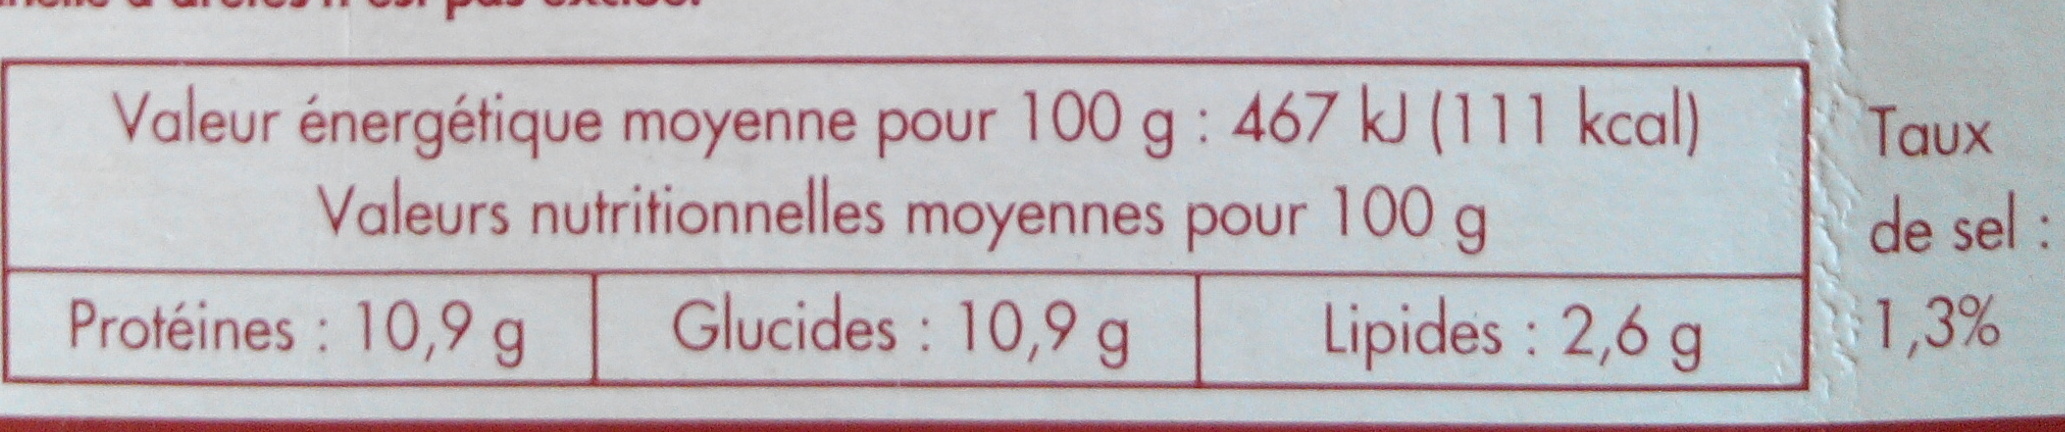 Paella royale, Surgelée - Nutrition facts - fr